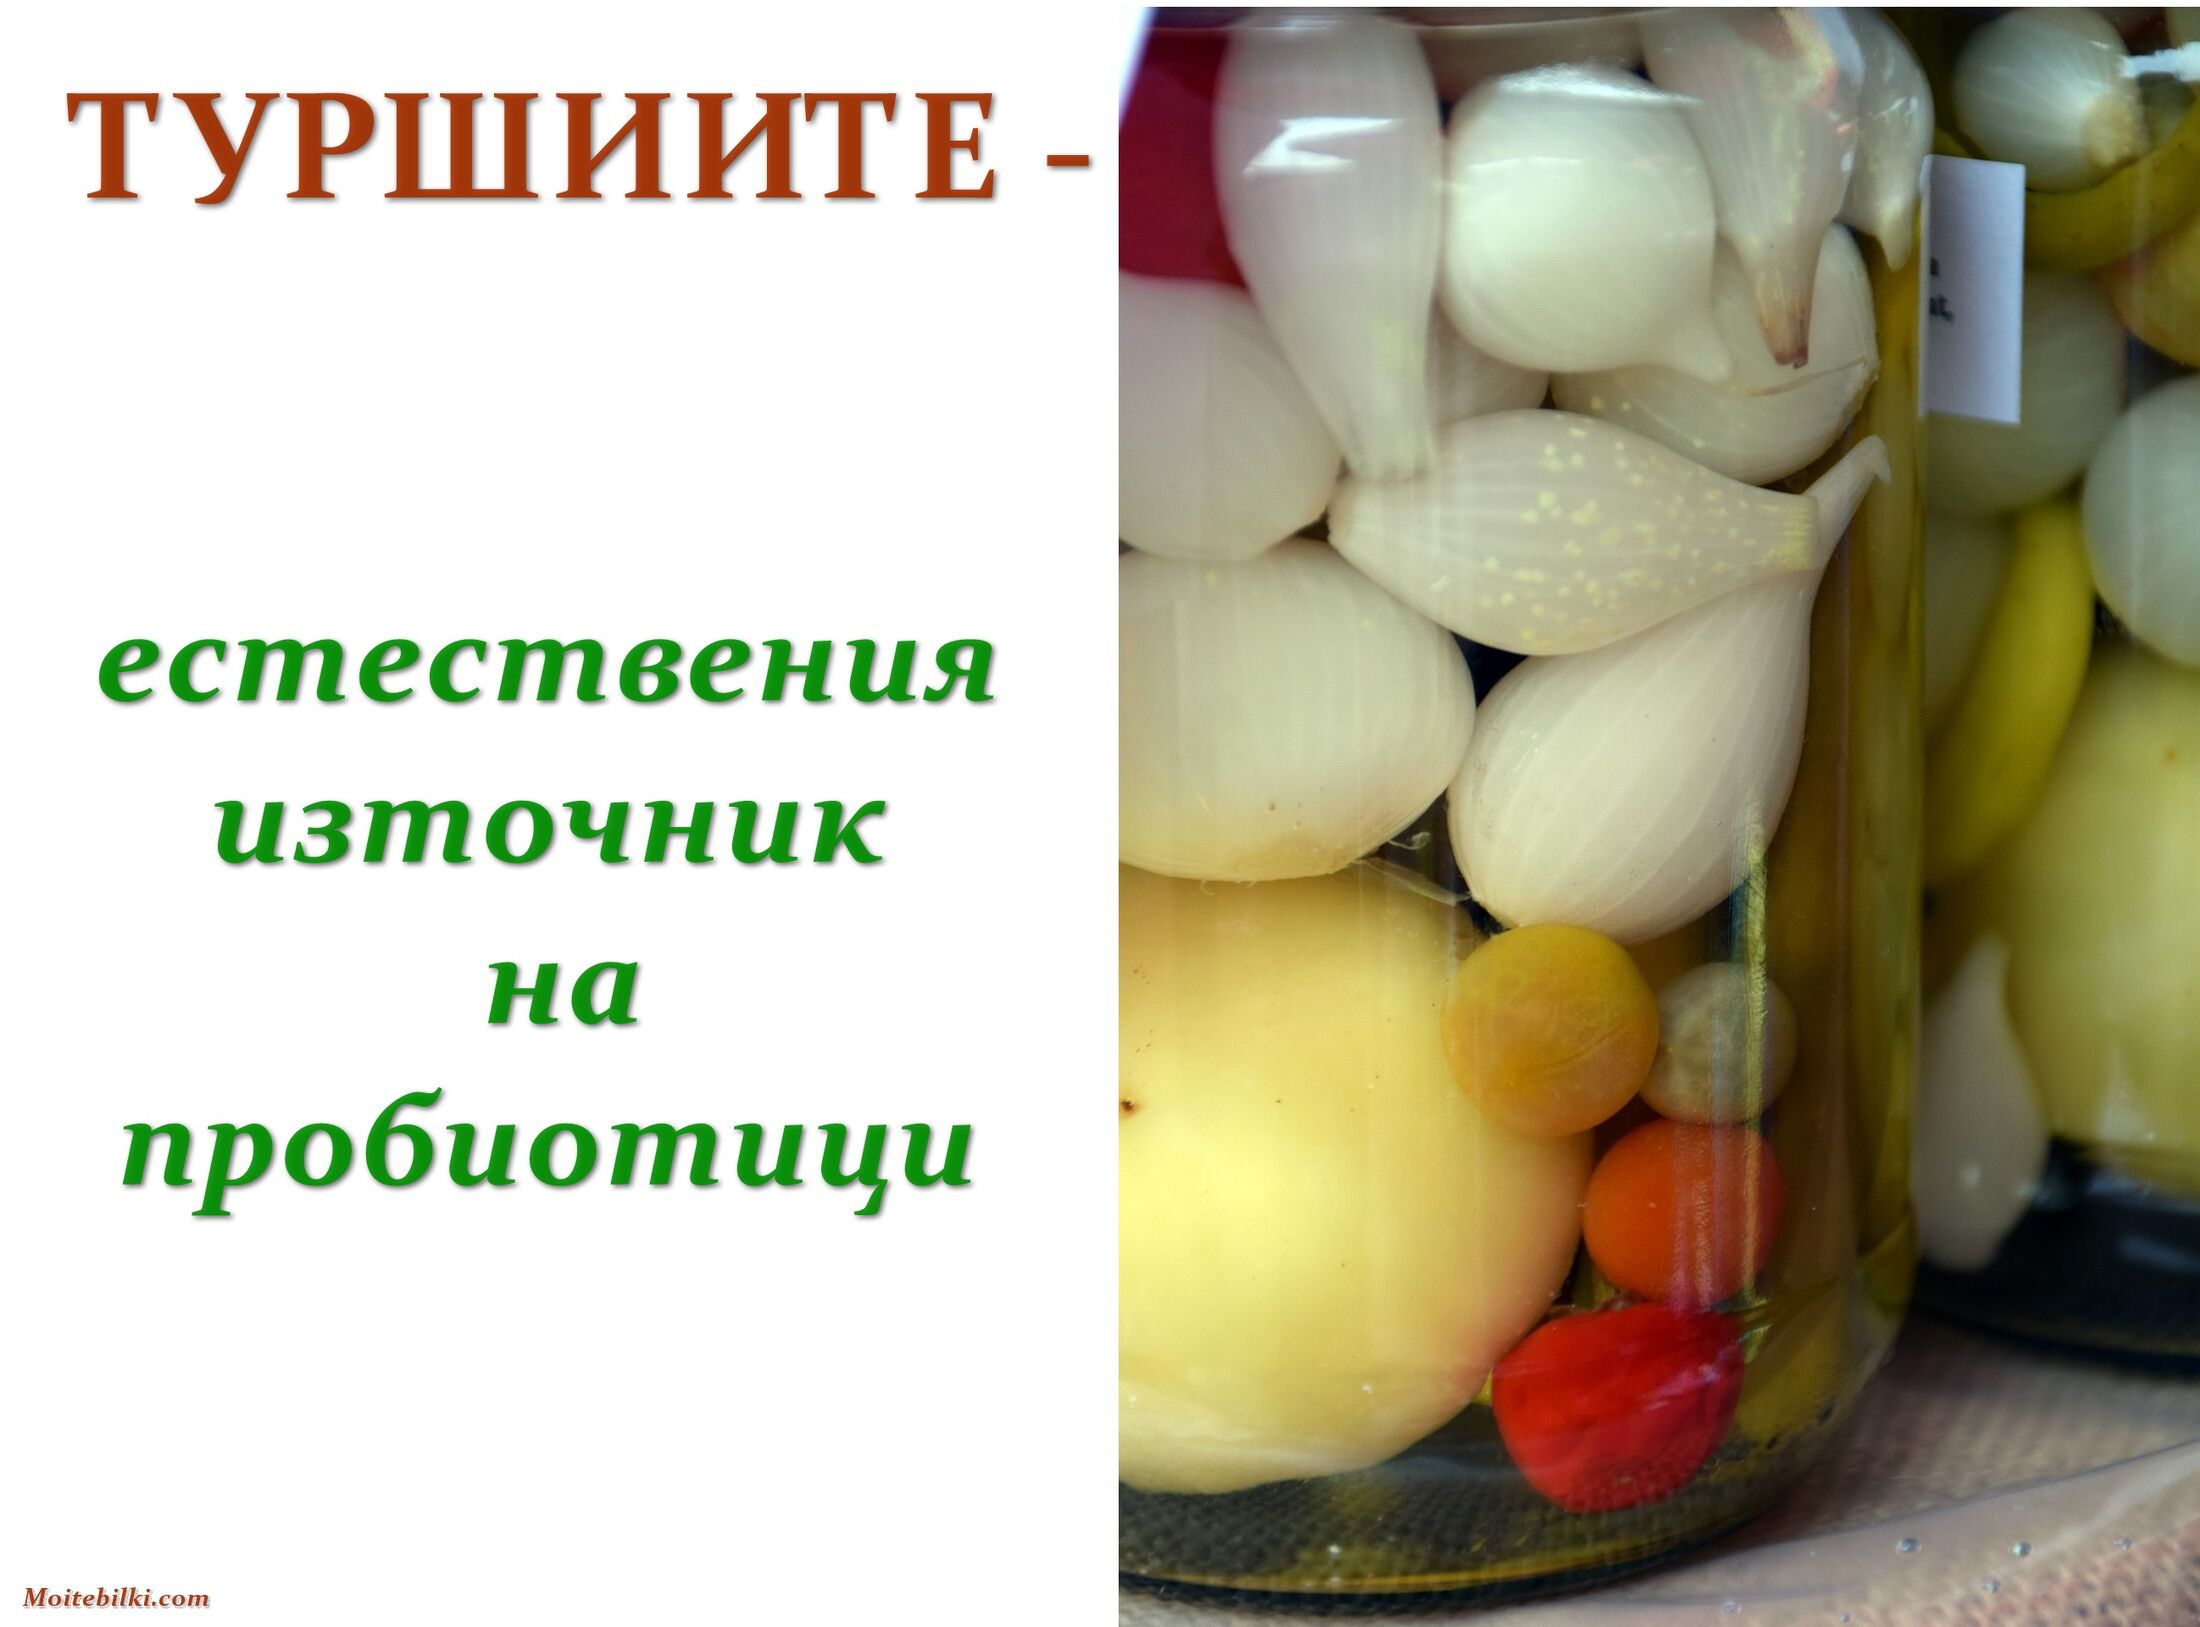 TУРШИИТЕ - естествения източник на пробиотици